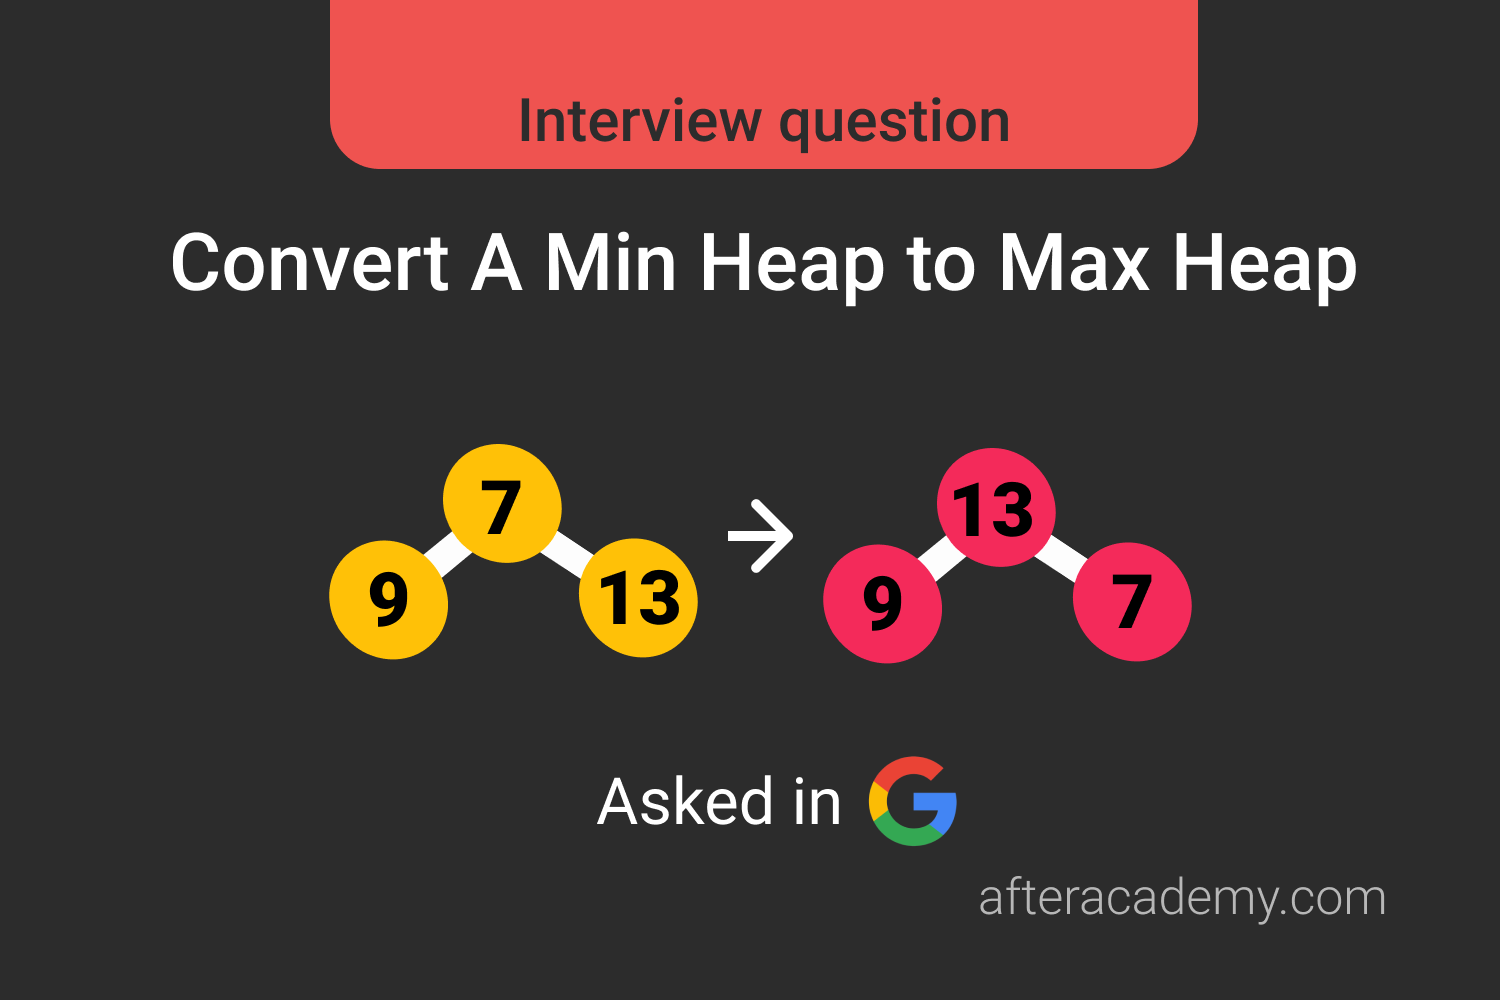 Convert A Min Heap to Max Heap